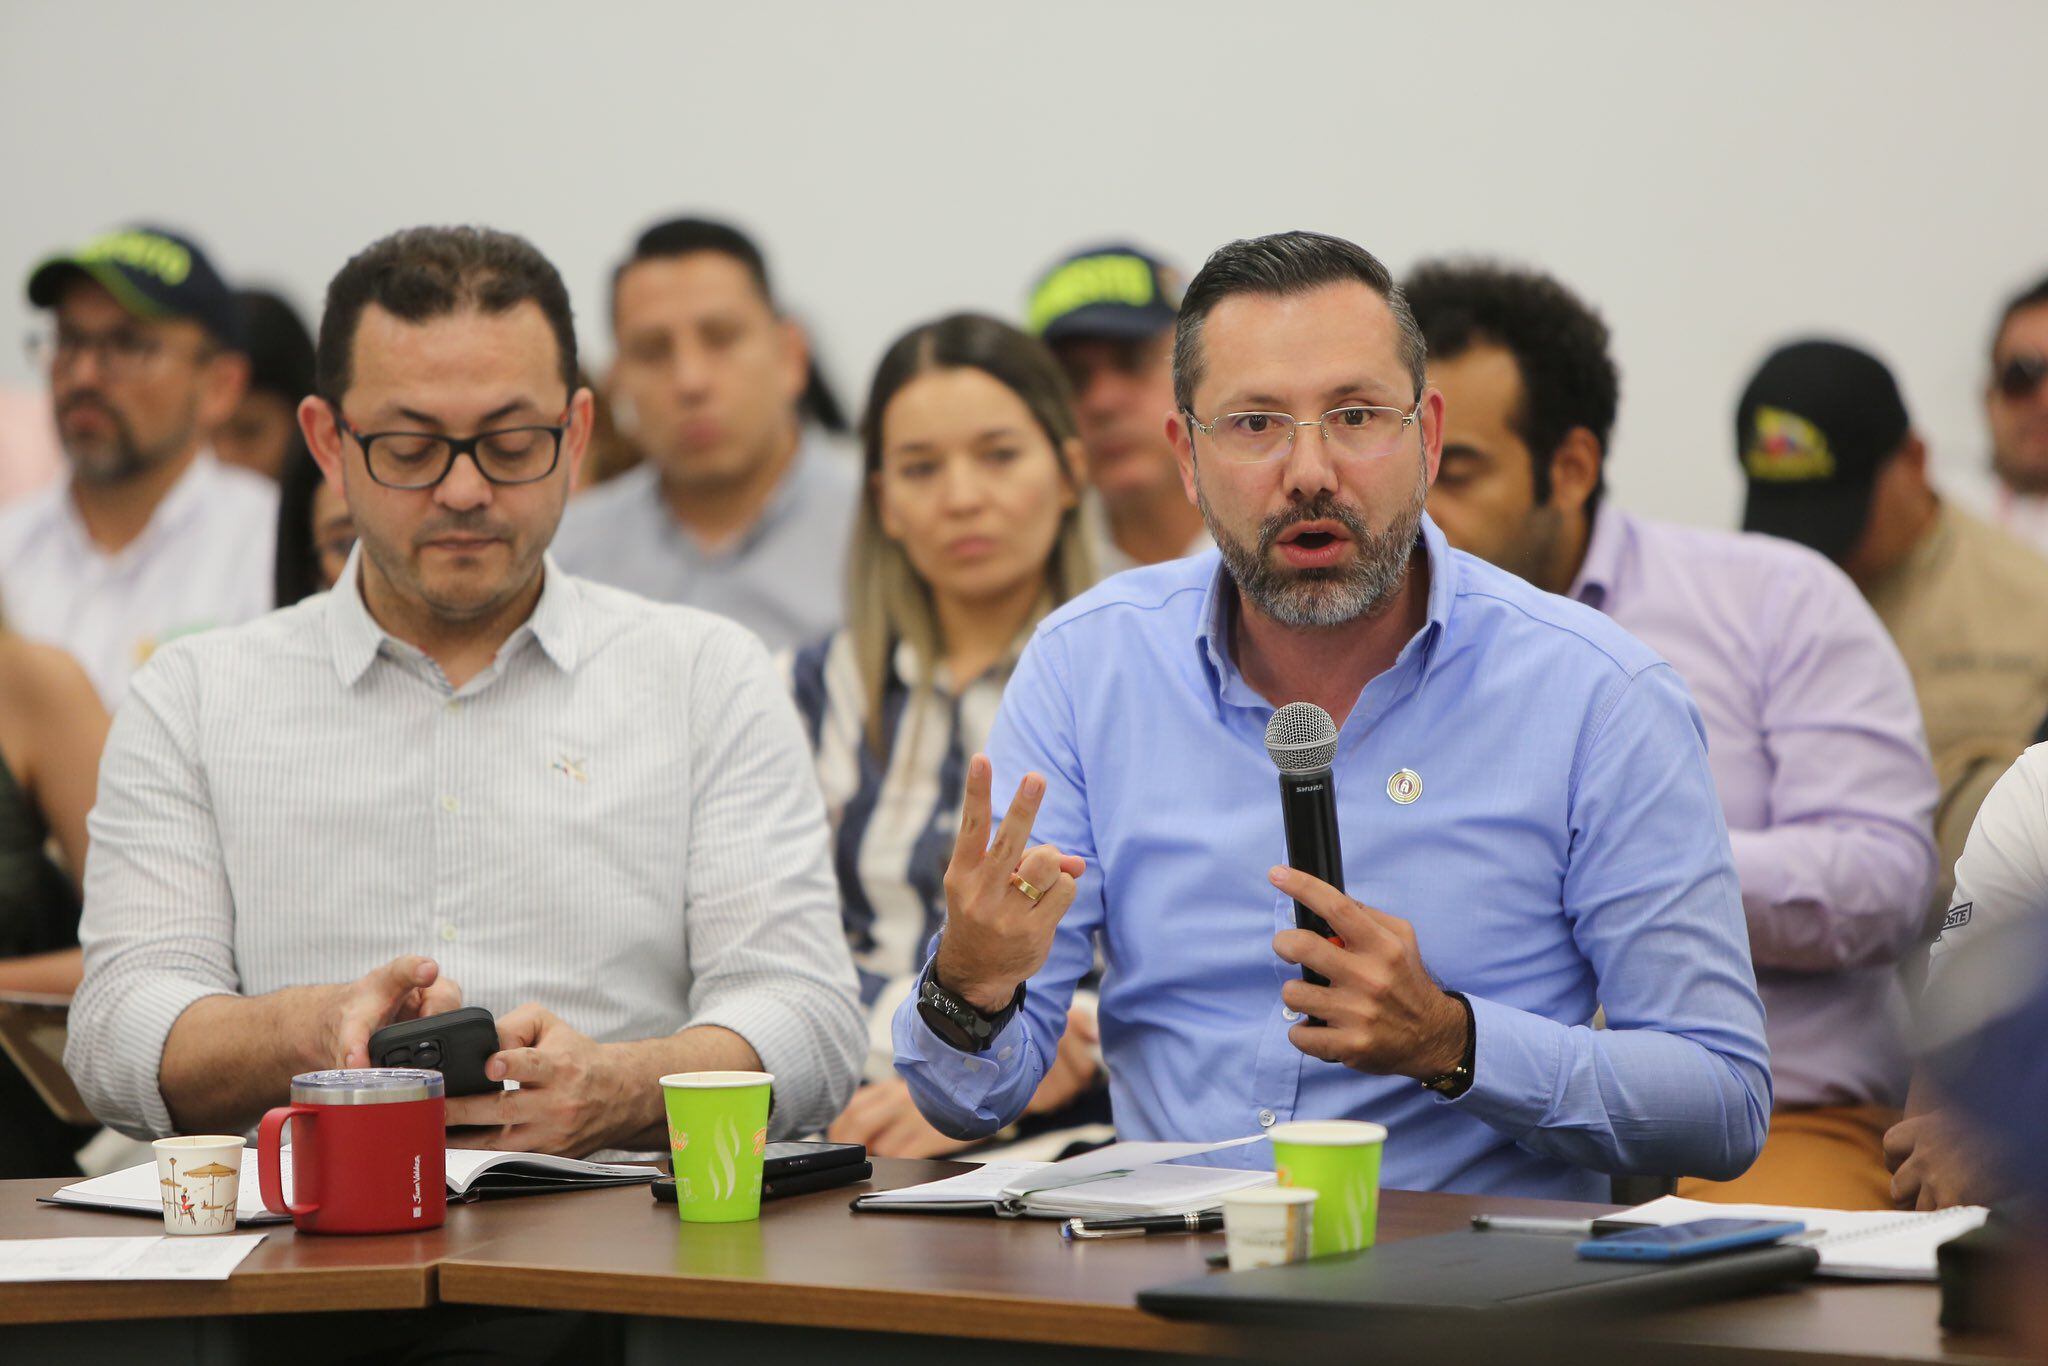 El alcalde de Bucaramanga logró un acuerdo con los motociclistas y descartó la restricción del parrillero - crédito Jaime Andrés Beltrán/X